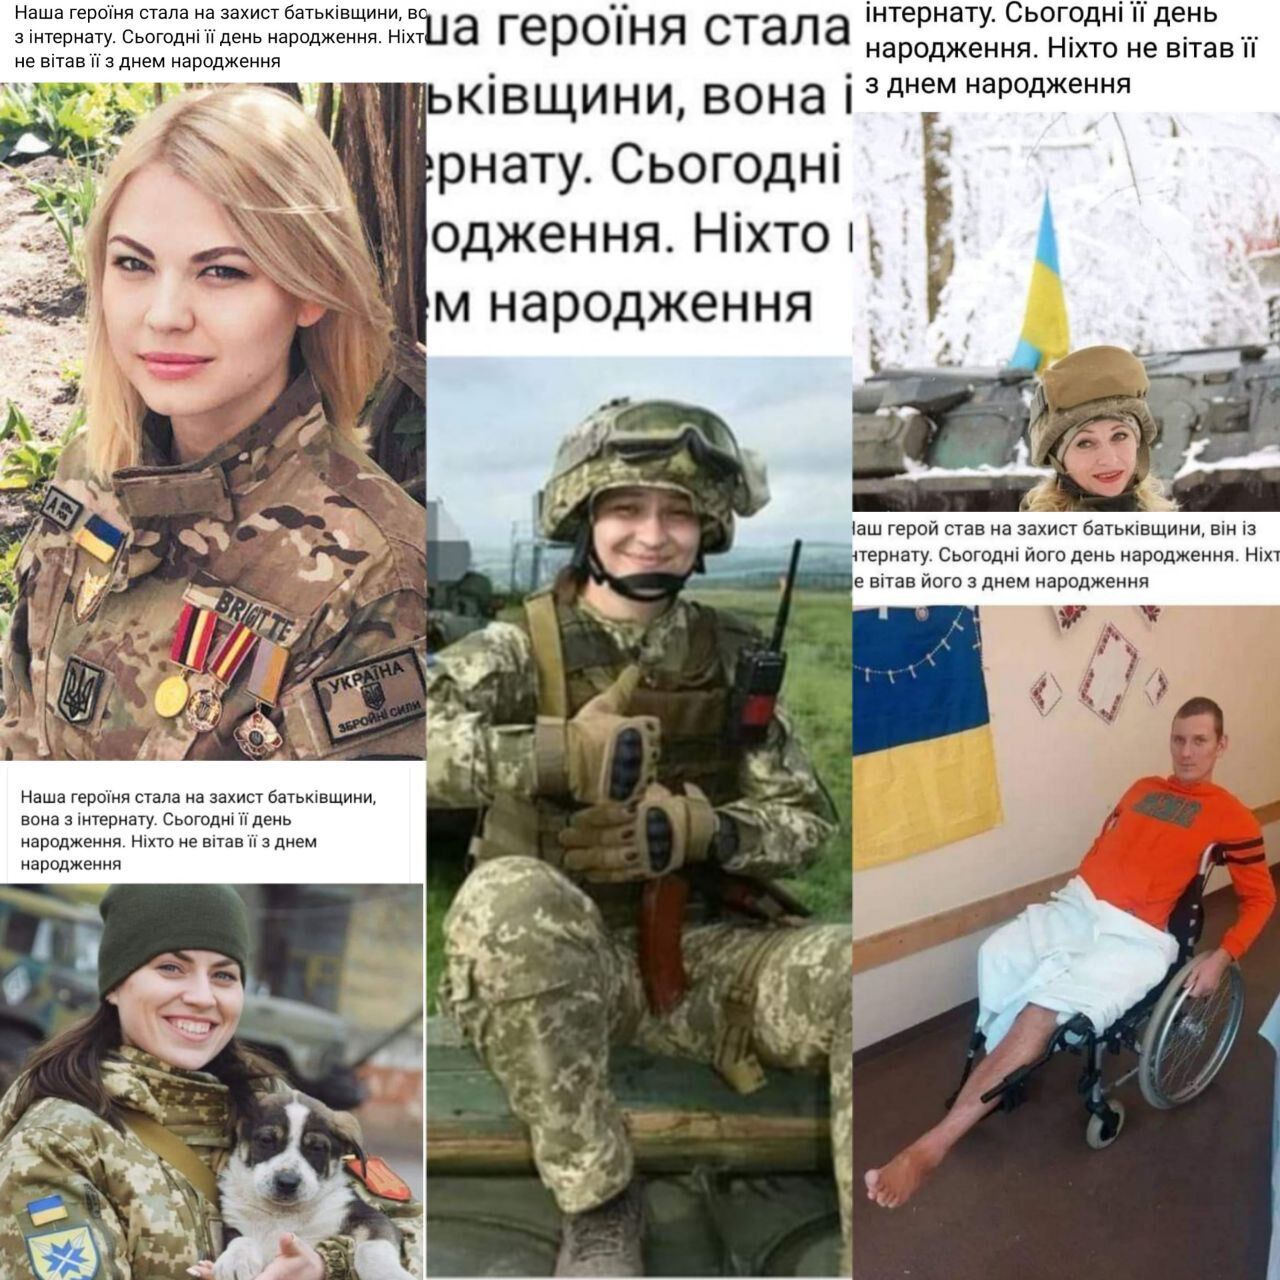 Военные призвали к информационной гигиене в соцсетях: примеры, как враг использует украинцев для продвижения страниц